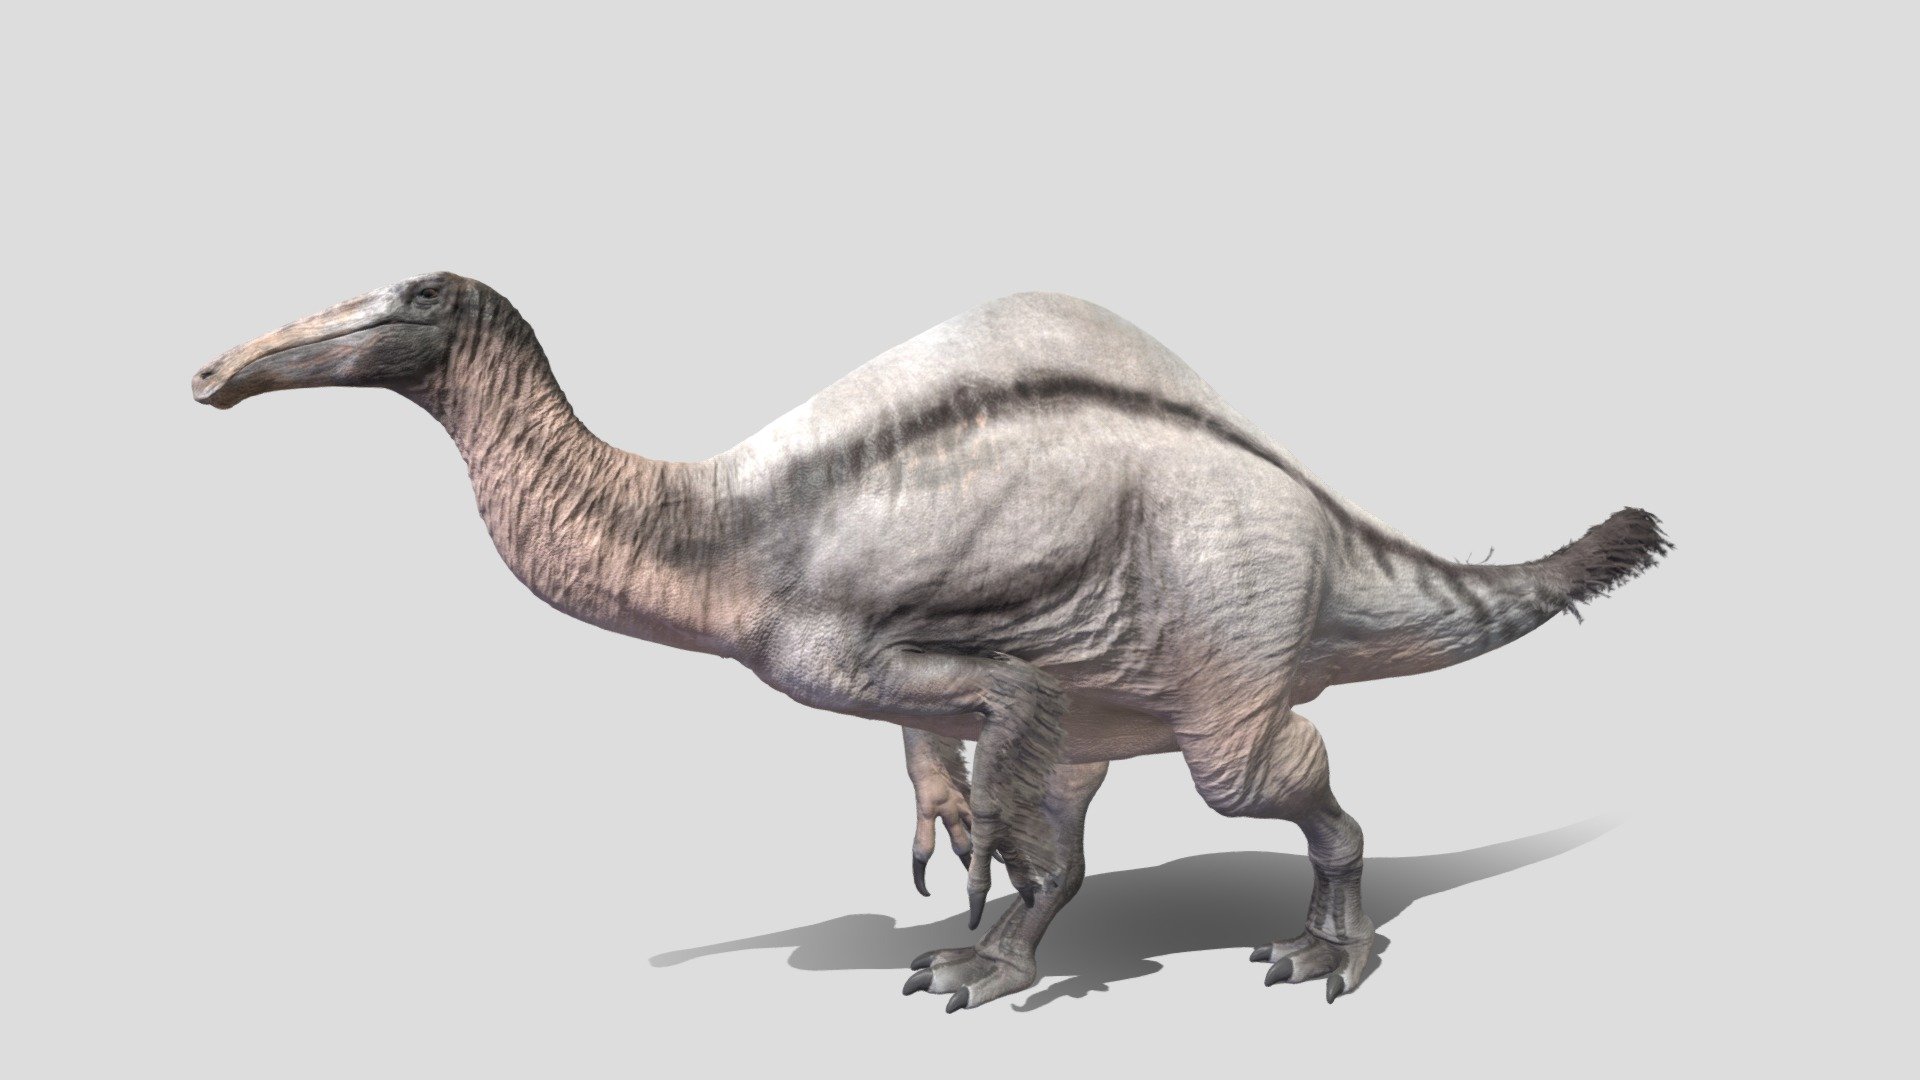 Deinocheirus mirificus – The Paint Paddock